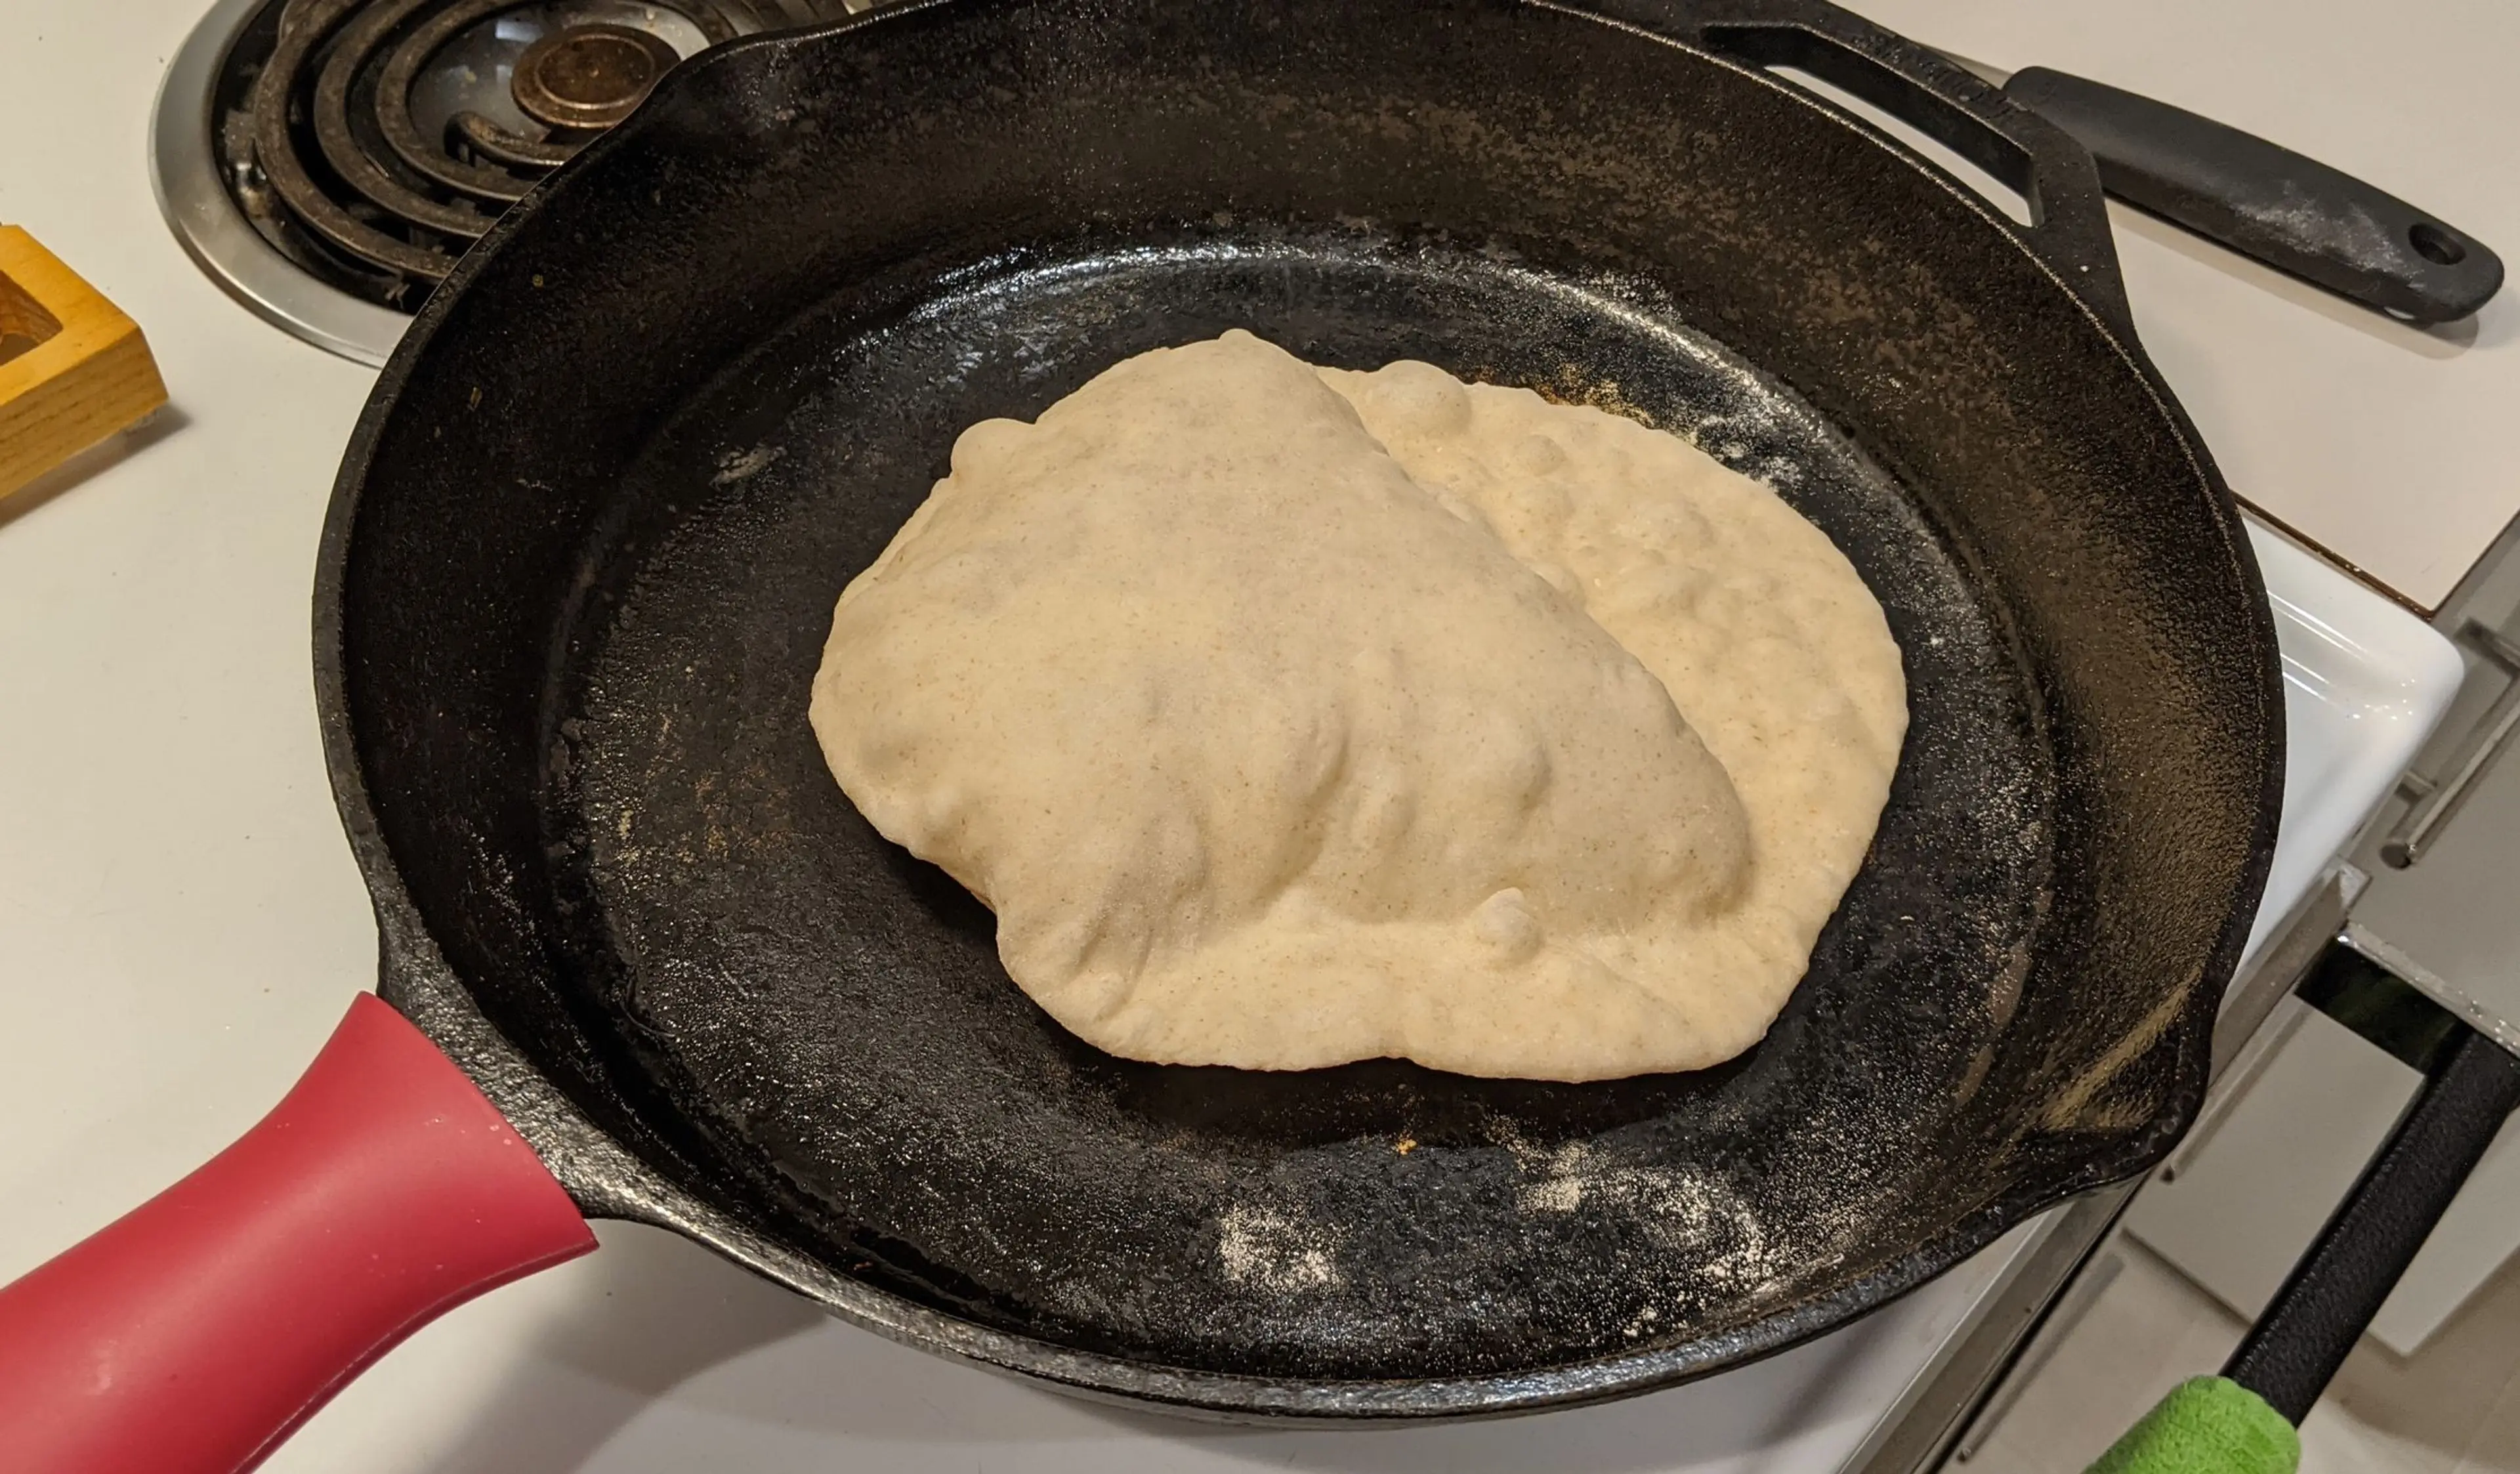 Flour Tortillas